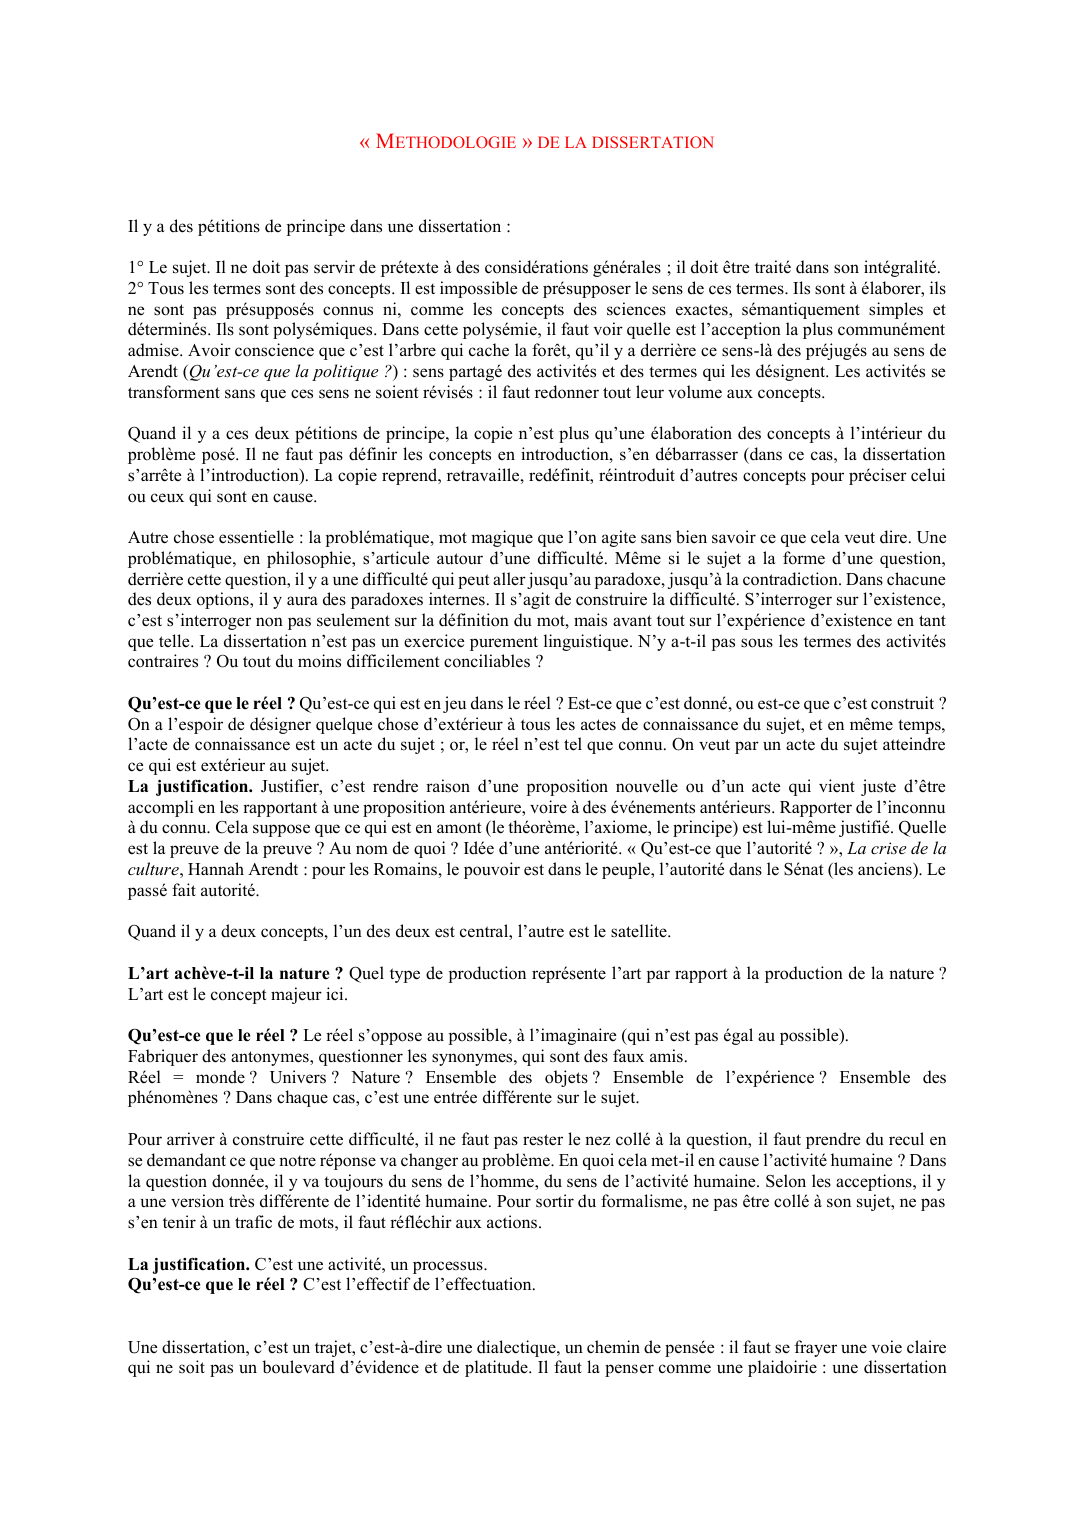 Prévisualisation du document "Méthodologie" de la dissertation philo